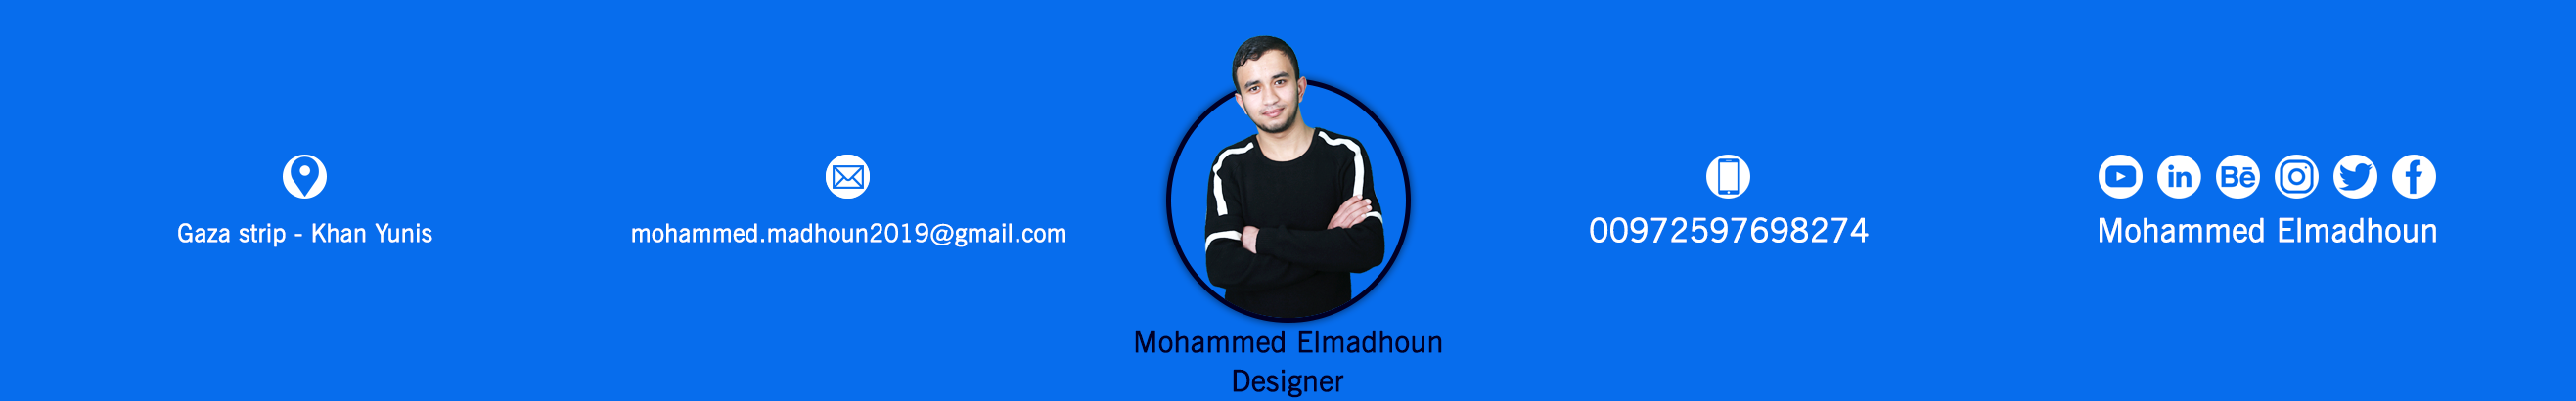 Mohammed Elmadhouns profilbanner